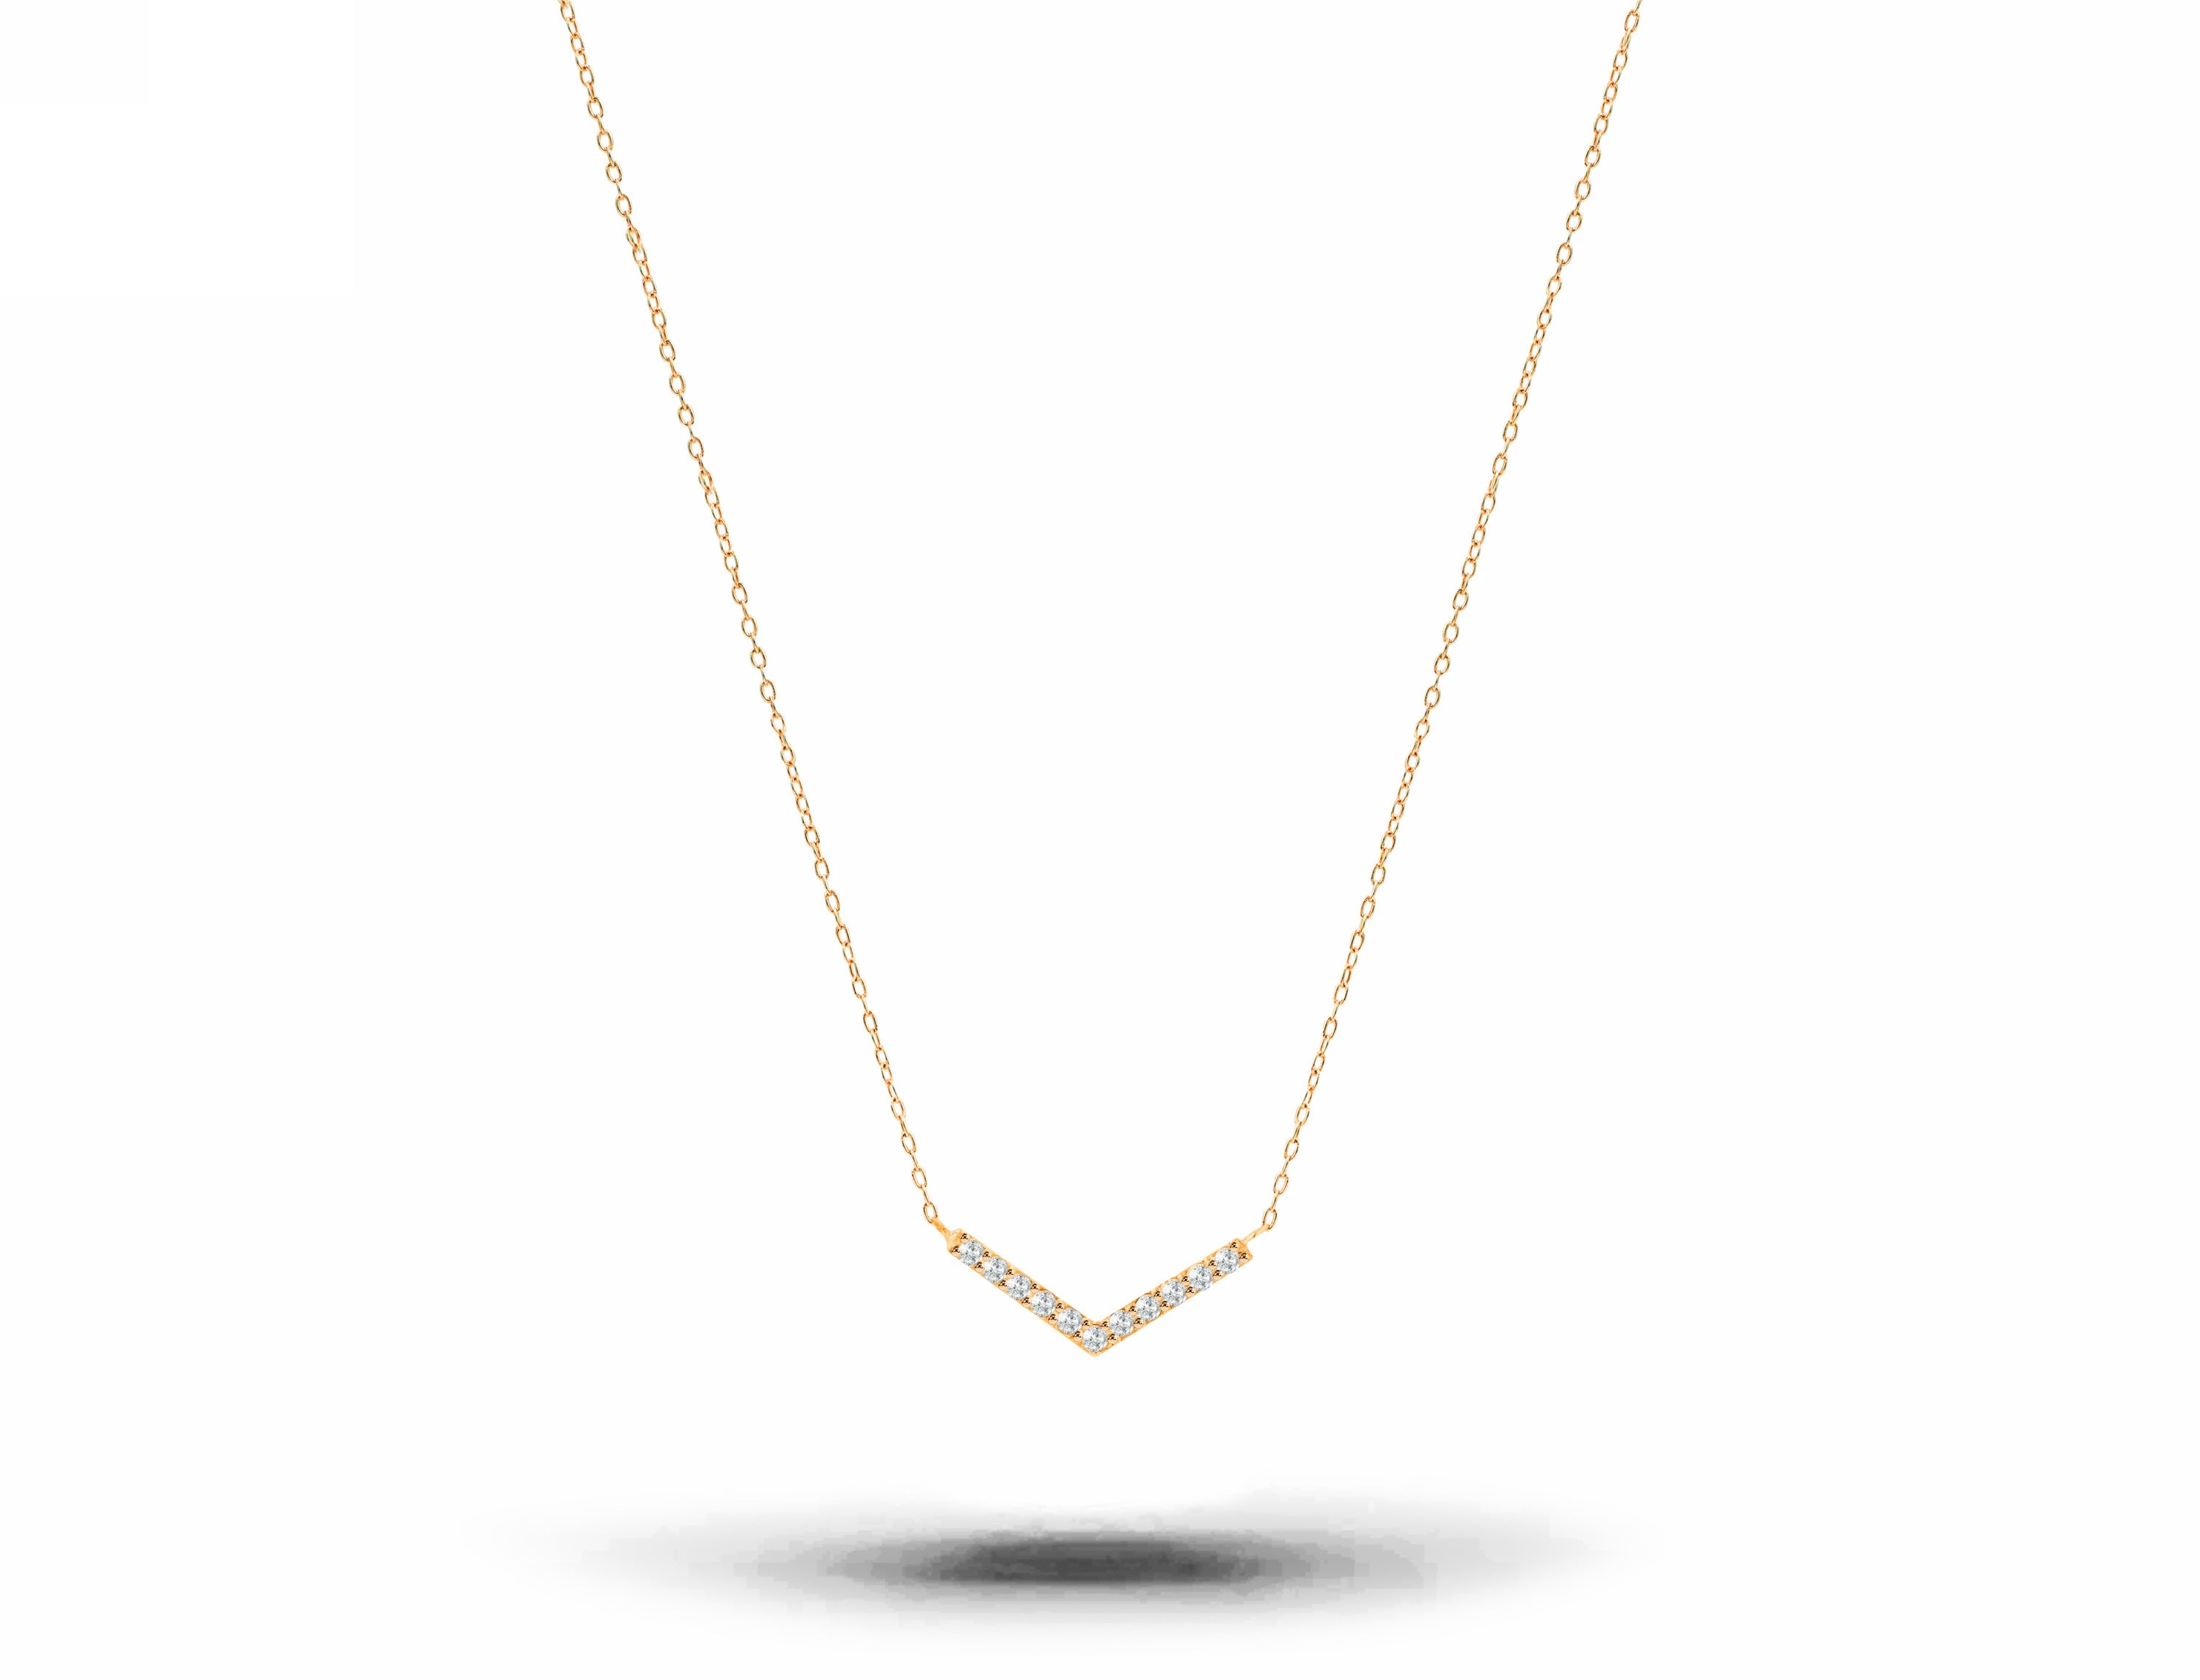 Collier en or 14 carats pavé de diamants « Dainty Pave », cadeau de Valentin moderne et minimaliste